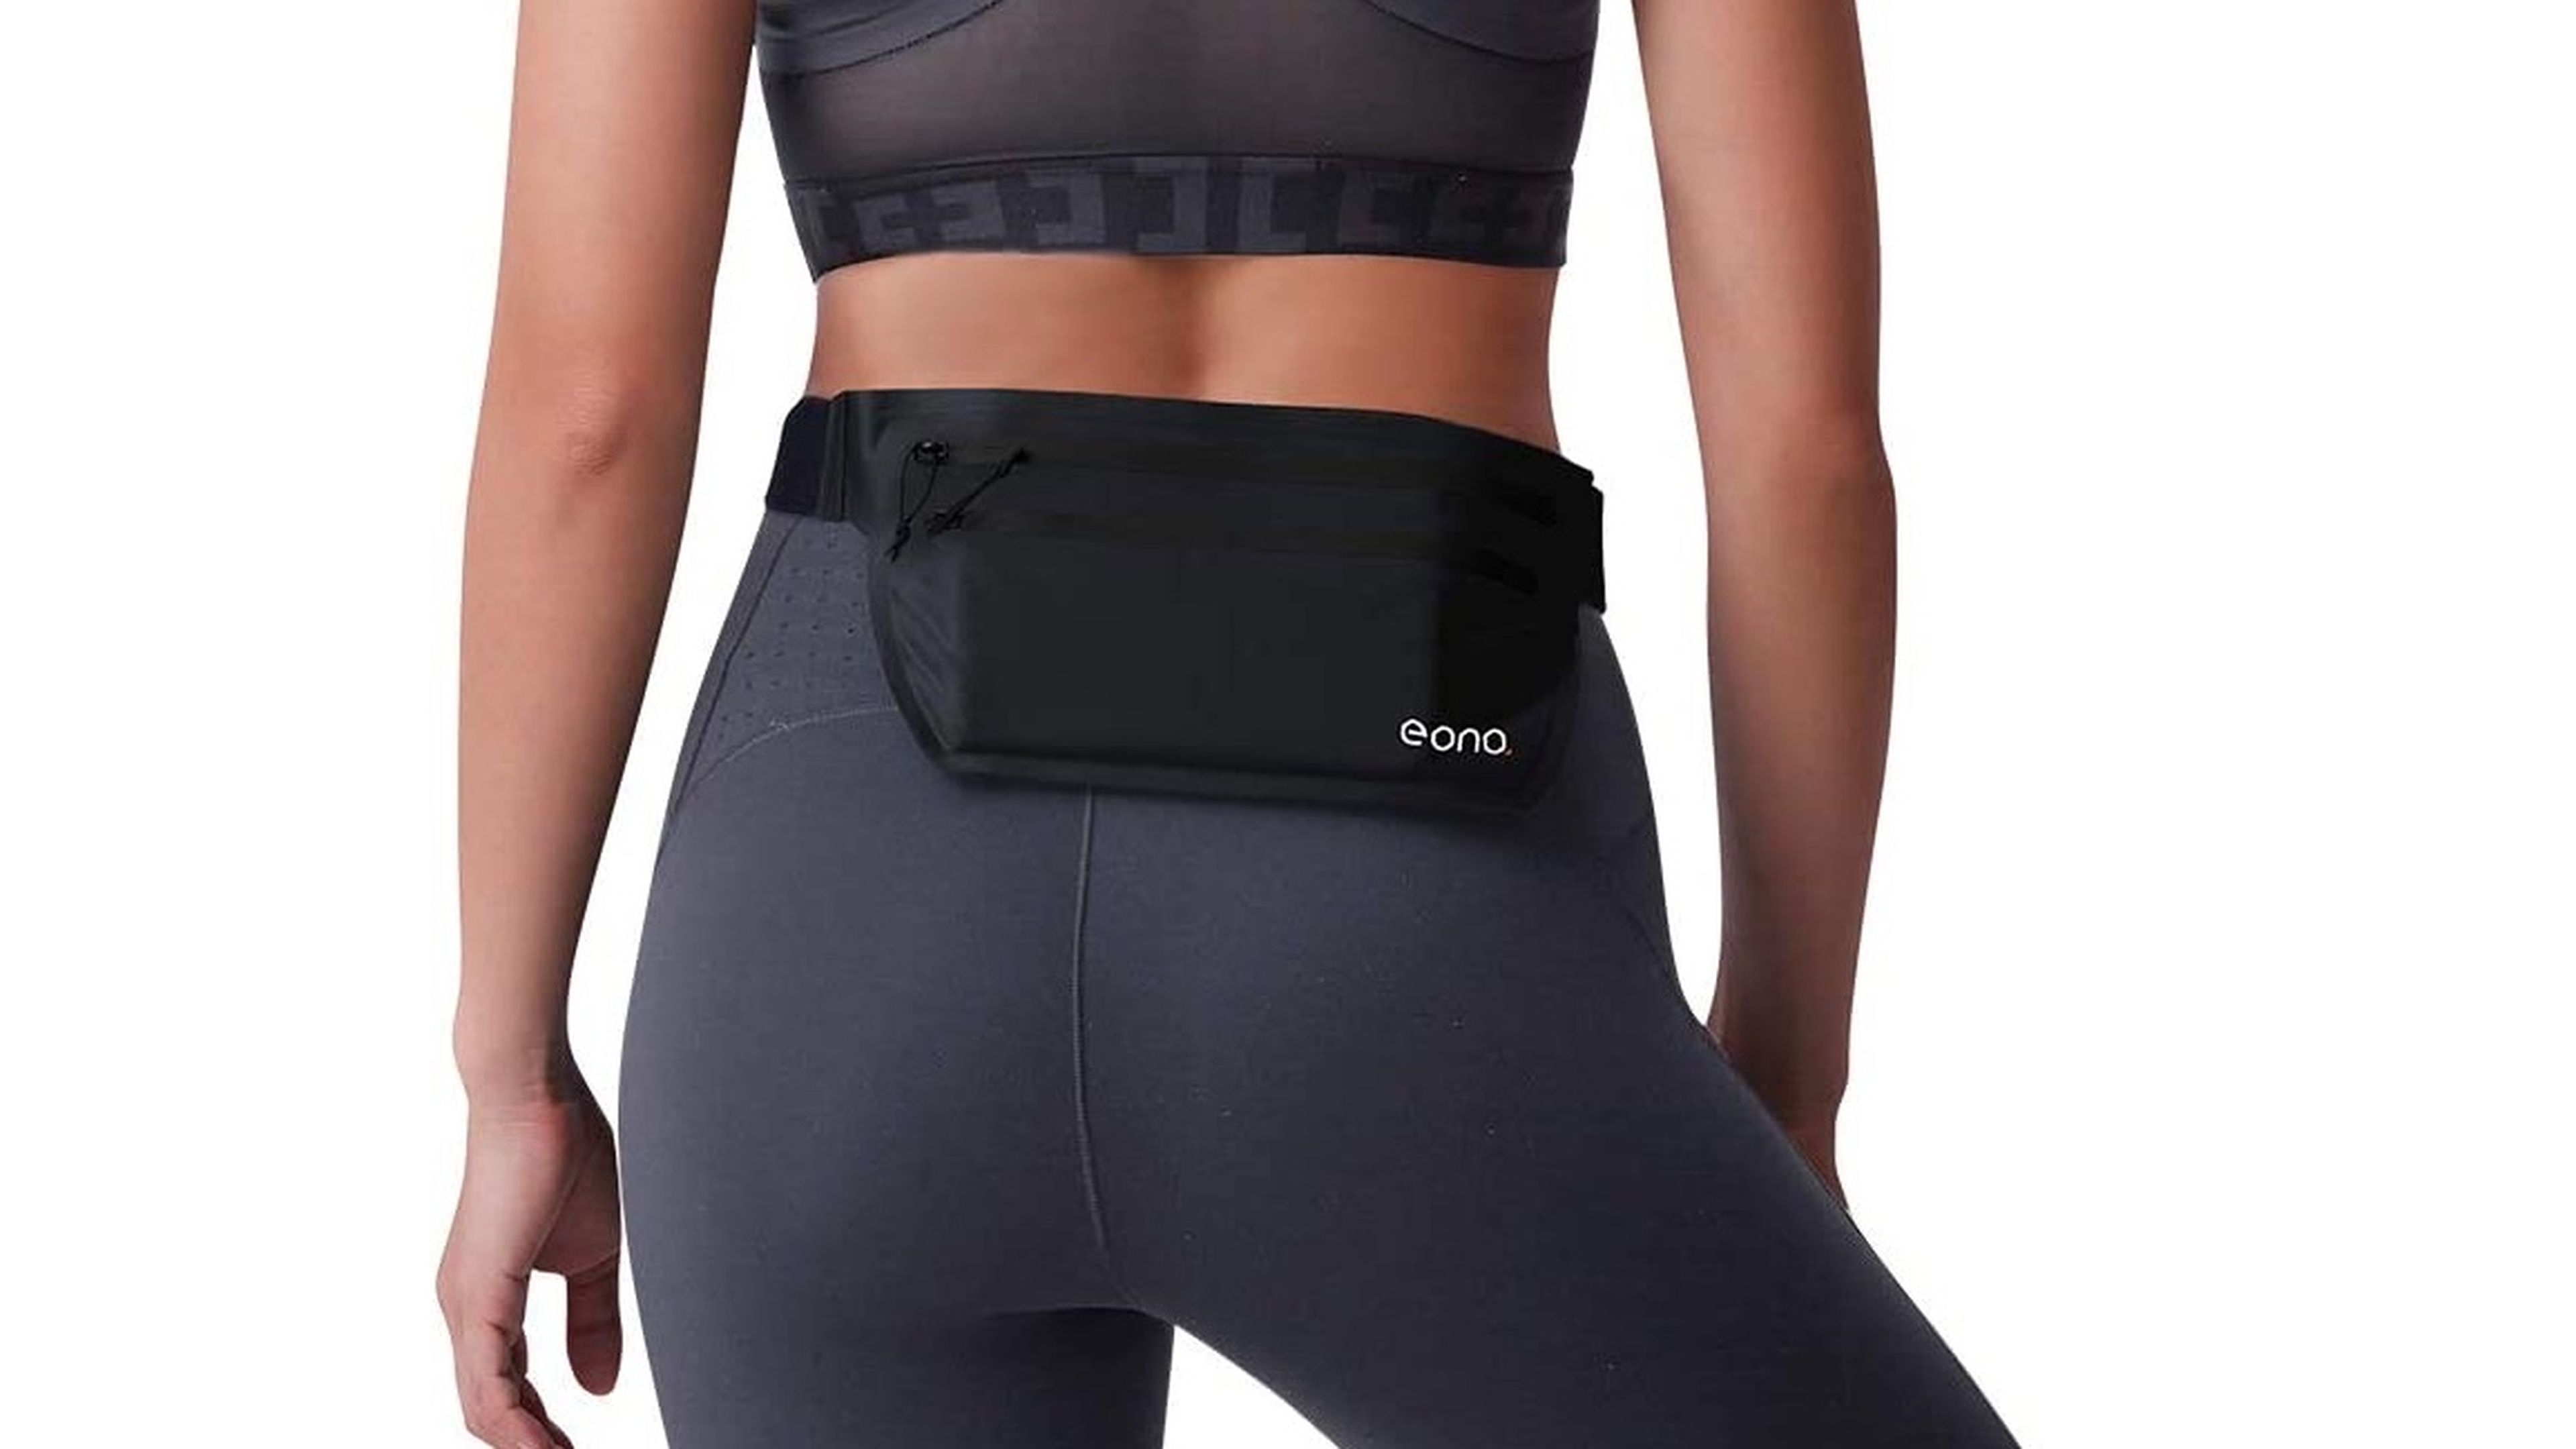 Cinturón portaobjetos para móvil de la marca Eono (Amazon)